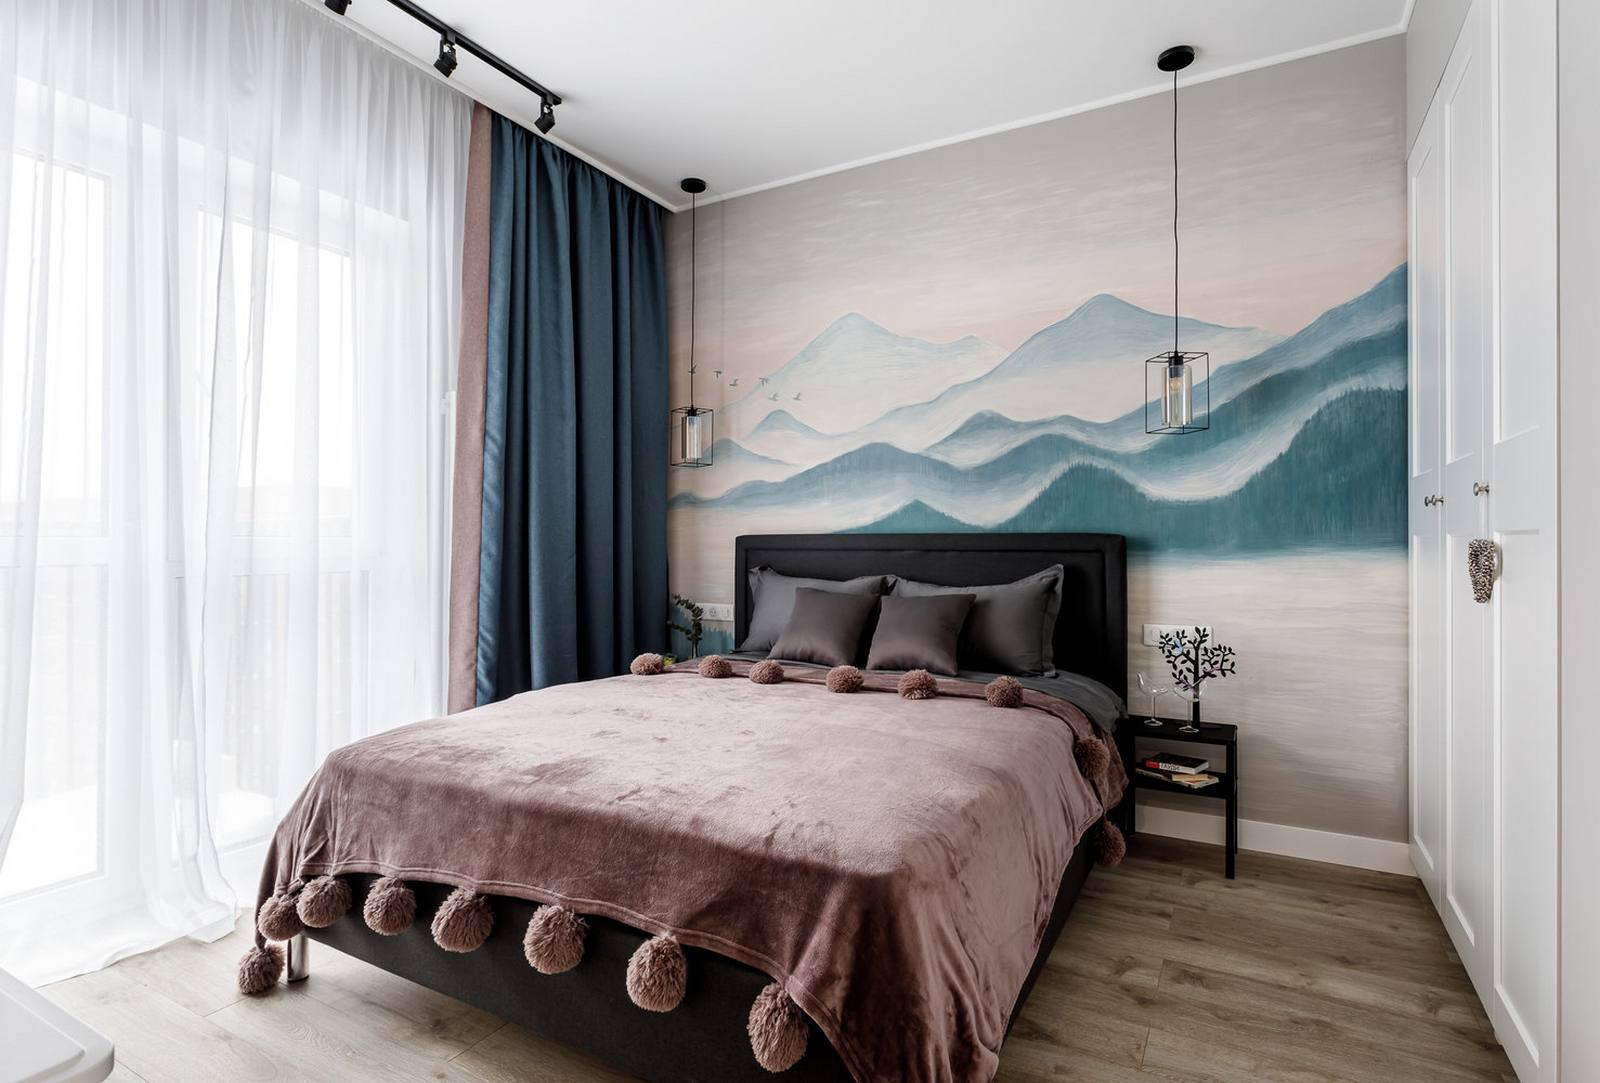 Phòng ngủ gây ấn tượng nhất với bức tranh tường được vẽ tay hoàn toàn với chủ đề phong cảnh sơn thủy hữu tình. Hệ thống rèm che cửa sổ tương tự phòng khách, giường ở vị trí trung tâm với khung màu đen vững chãi cùng tấm chăn mịn mượt.